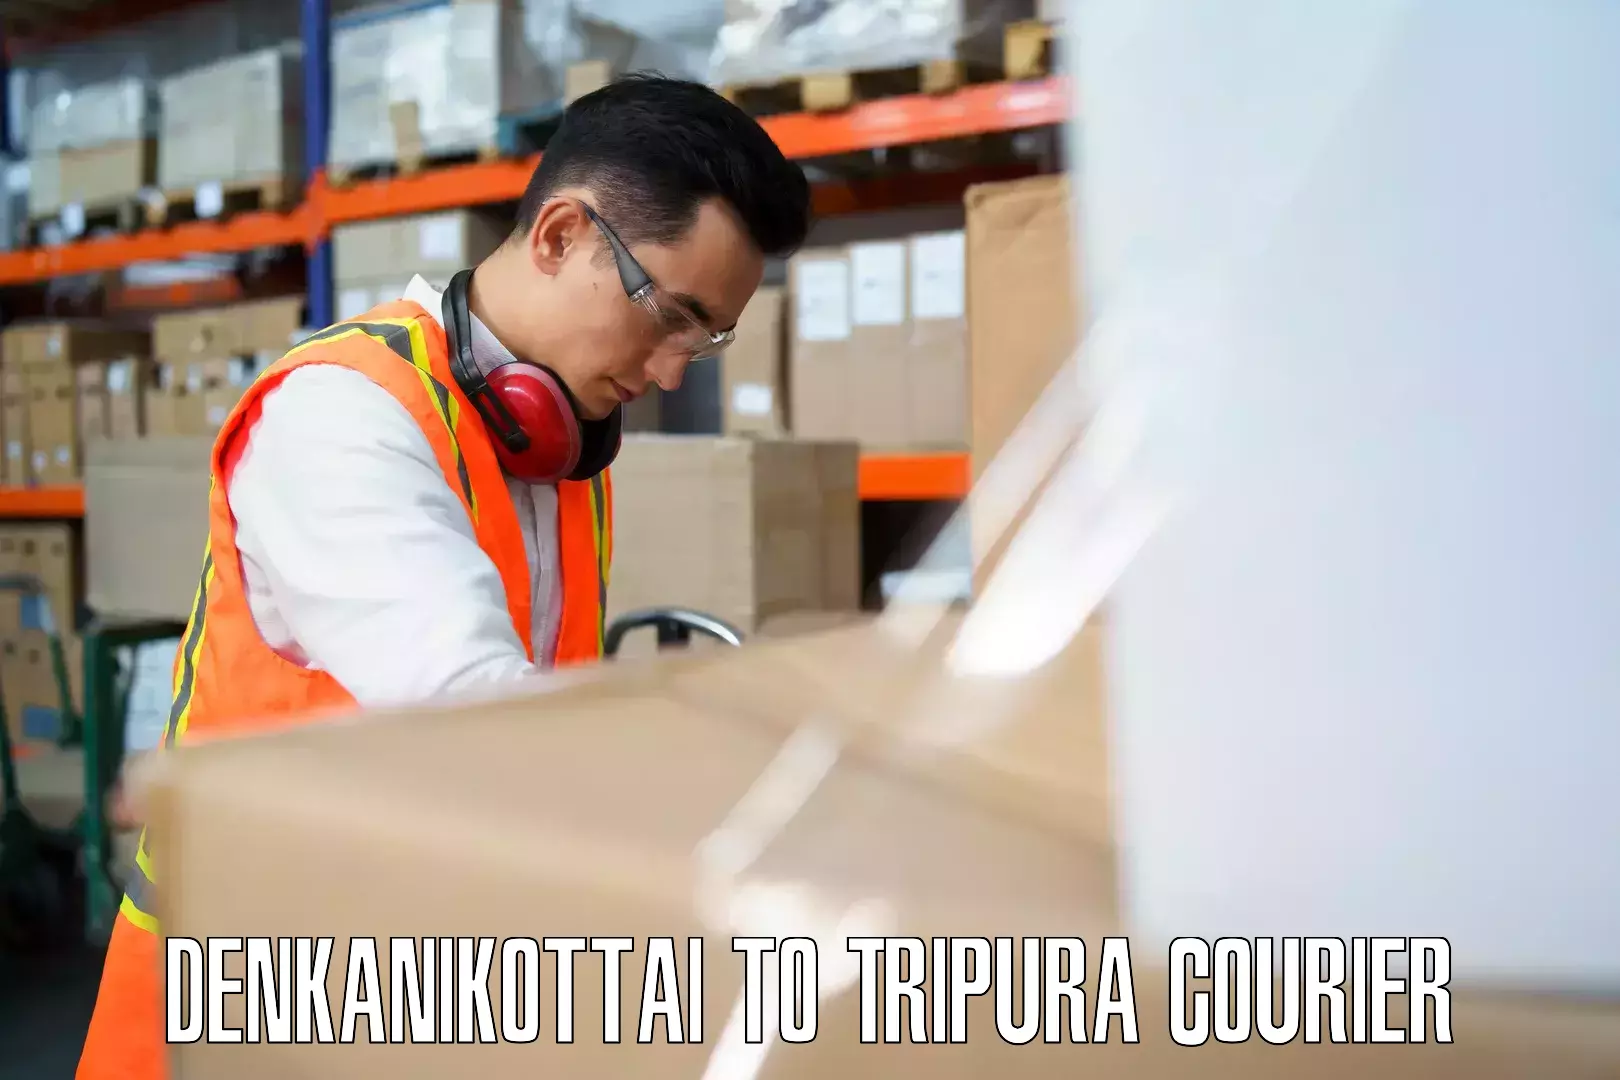 Baggage shipping experts Denkanikottai to NIT Agartala